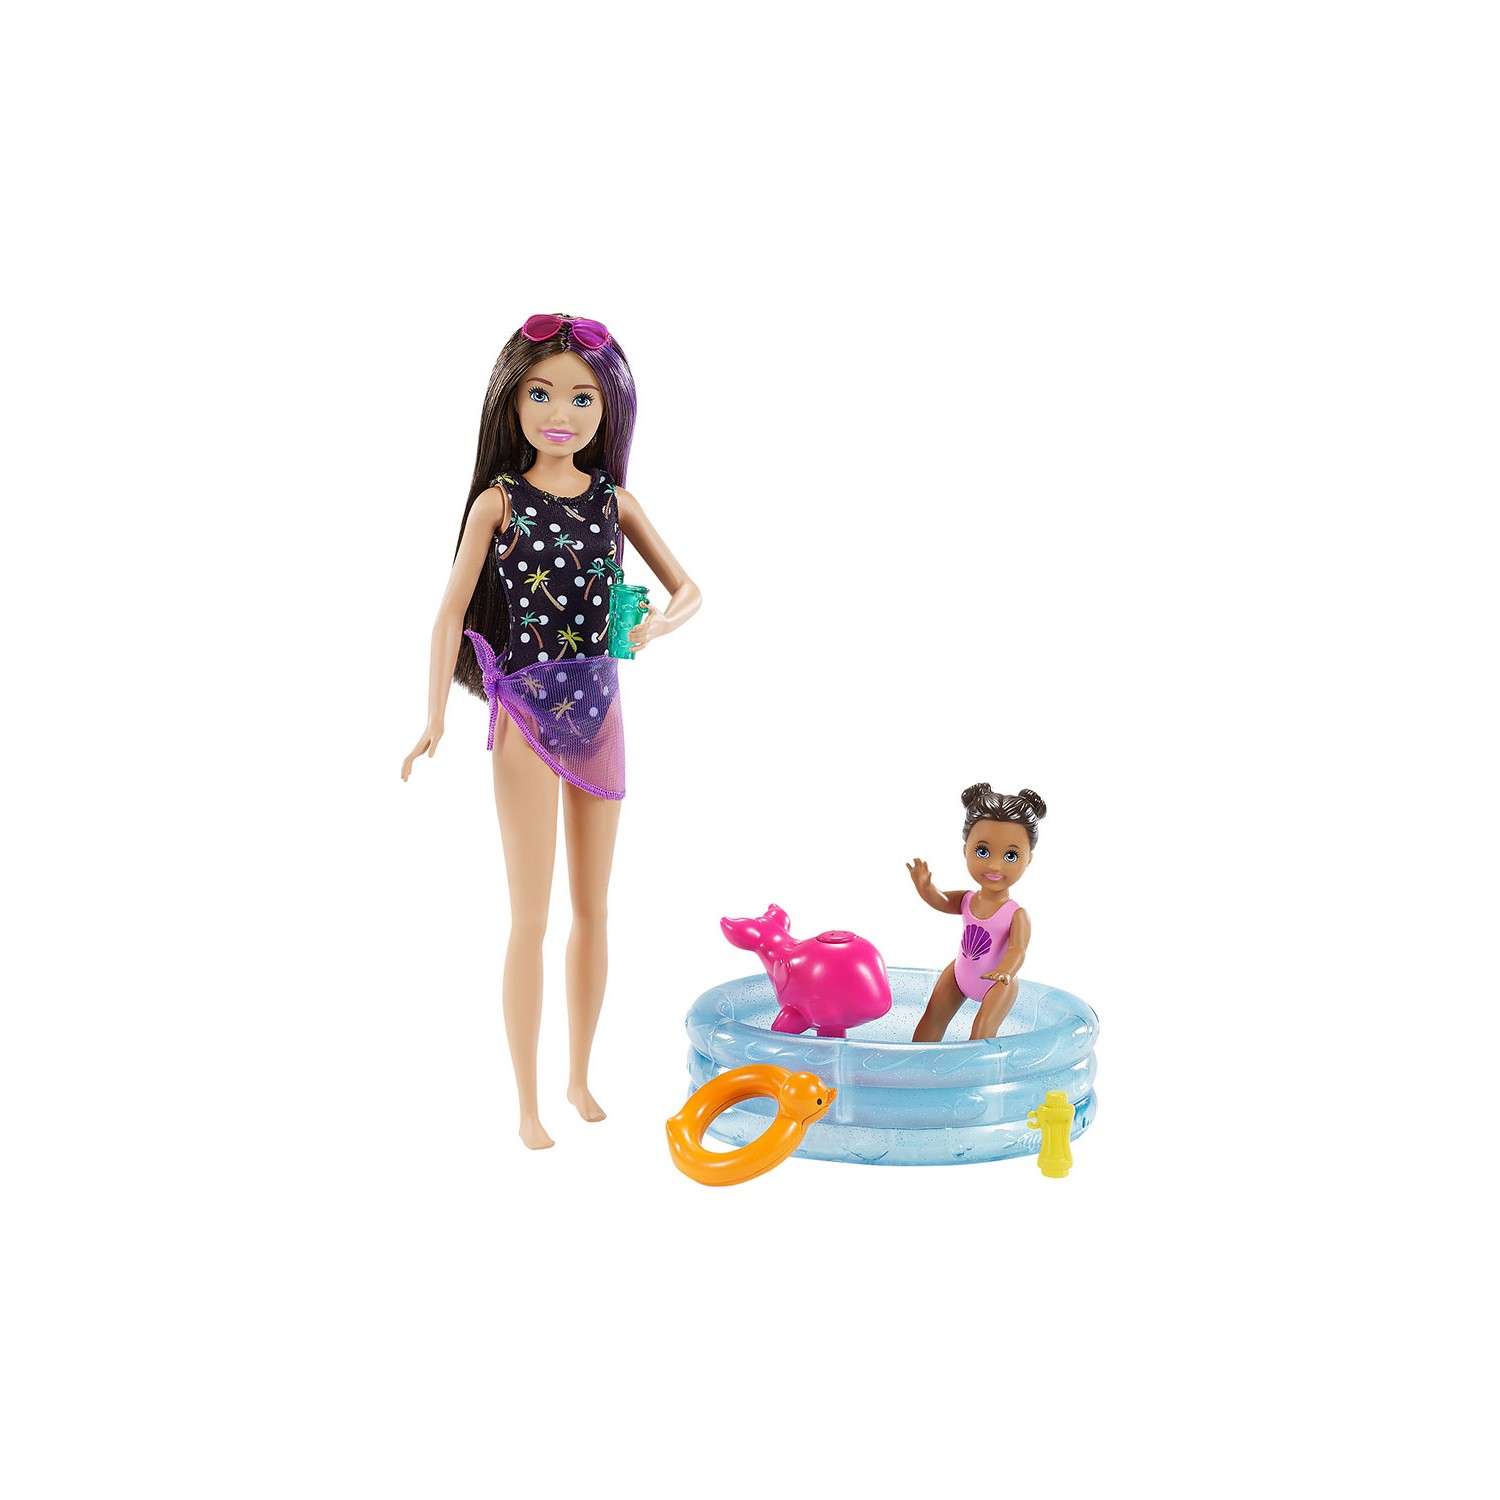 Игровой набор Barbie Skipper Babysitters игрушка для девочки набор в стиле барби barbie юный стилист